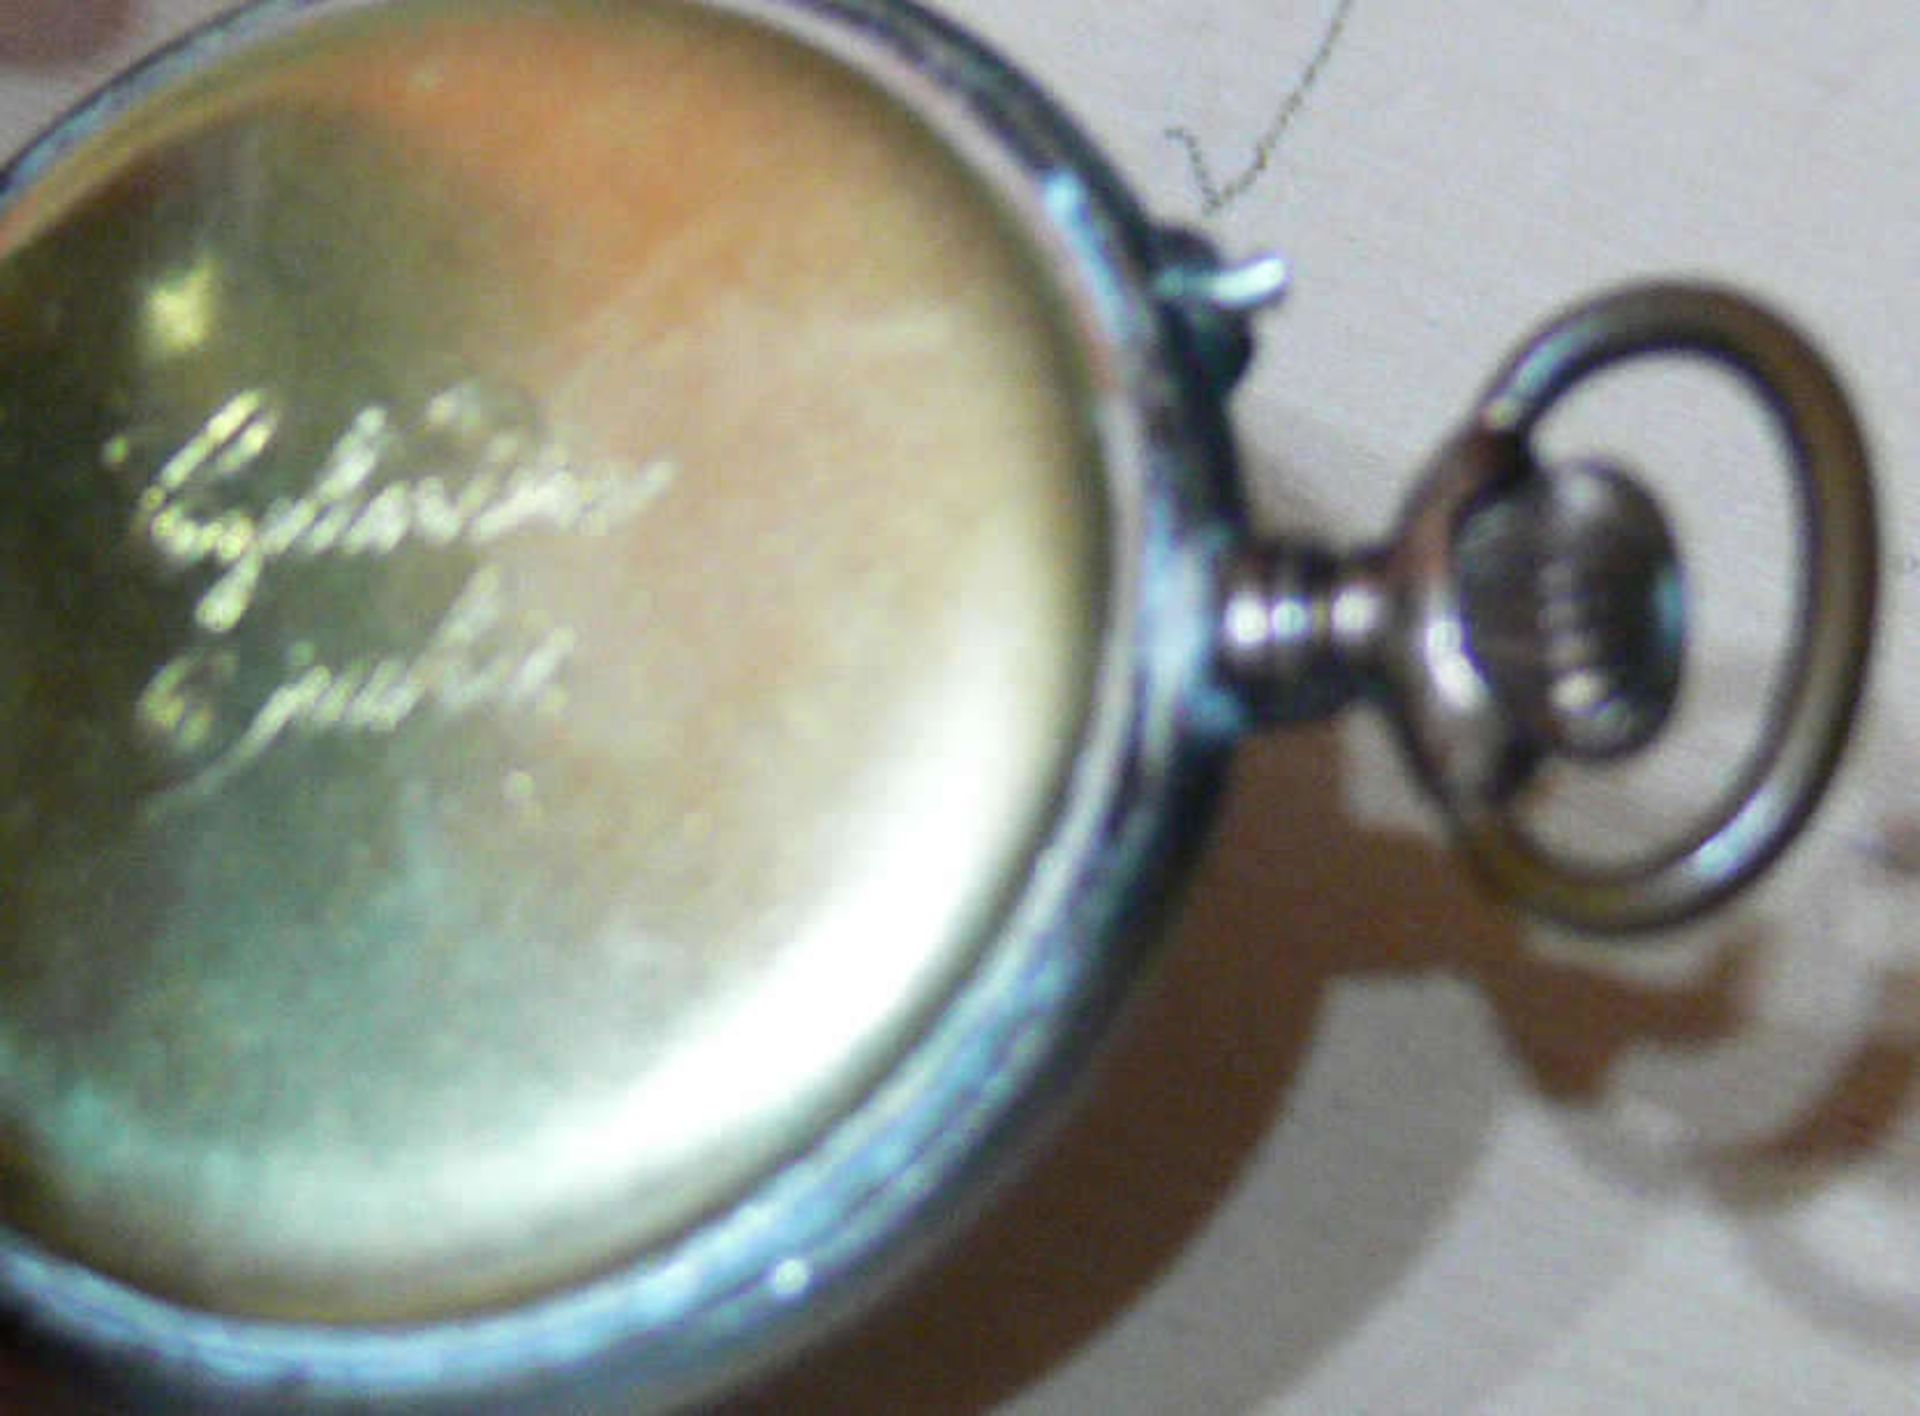 Kleine Taschenuhr, Gehäuse - Deckel 800er Silber gepunzt. Durchmesser: ca. 32 mm. Uhr läuft nicht - Bild 3 aus 3